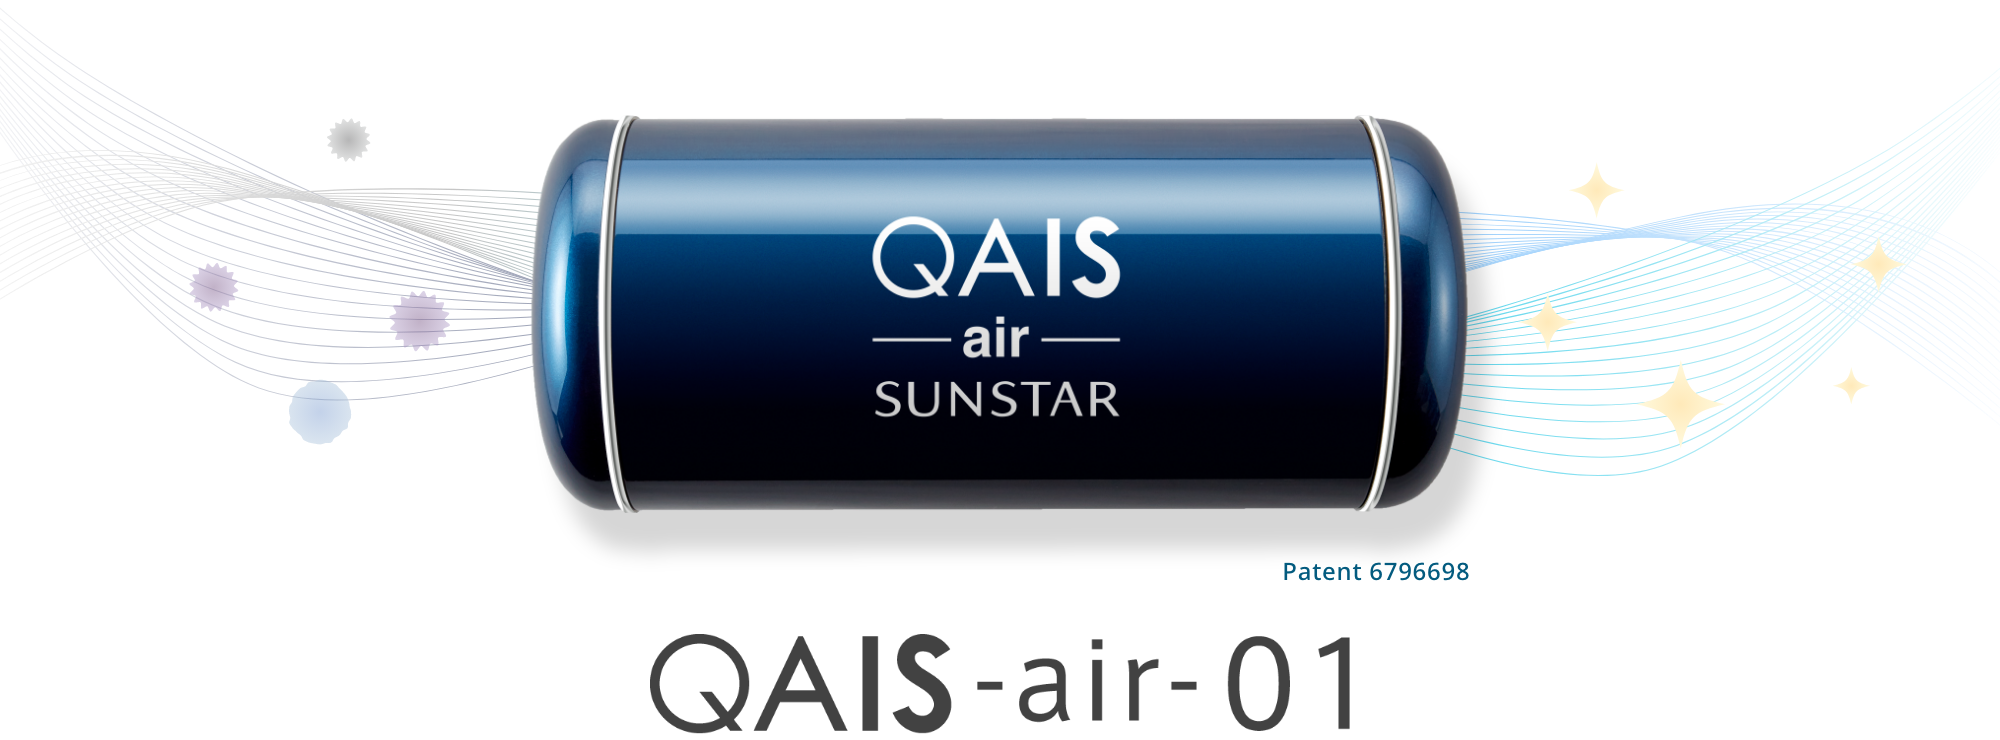 QAIS -air- 01